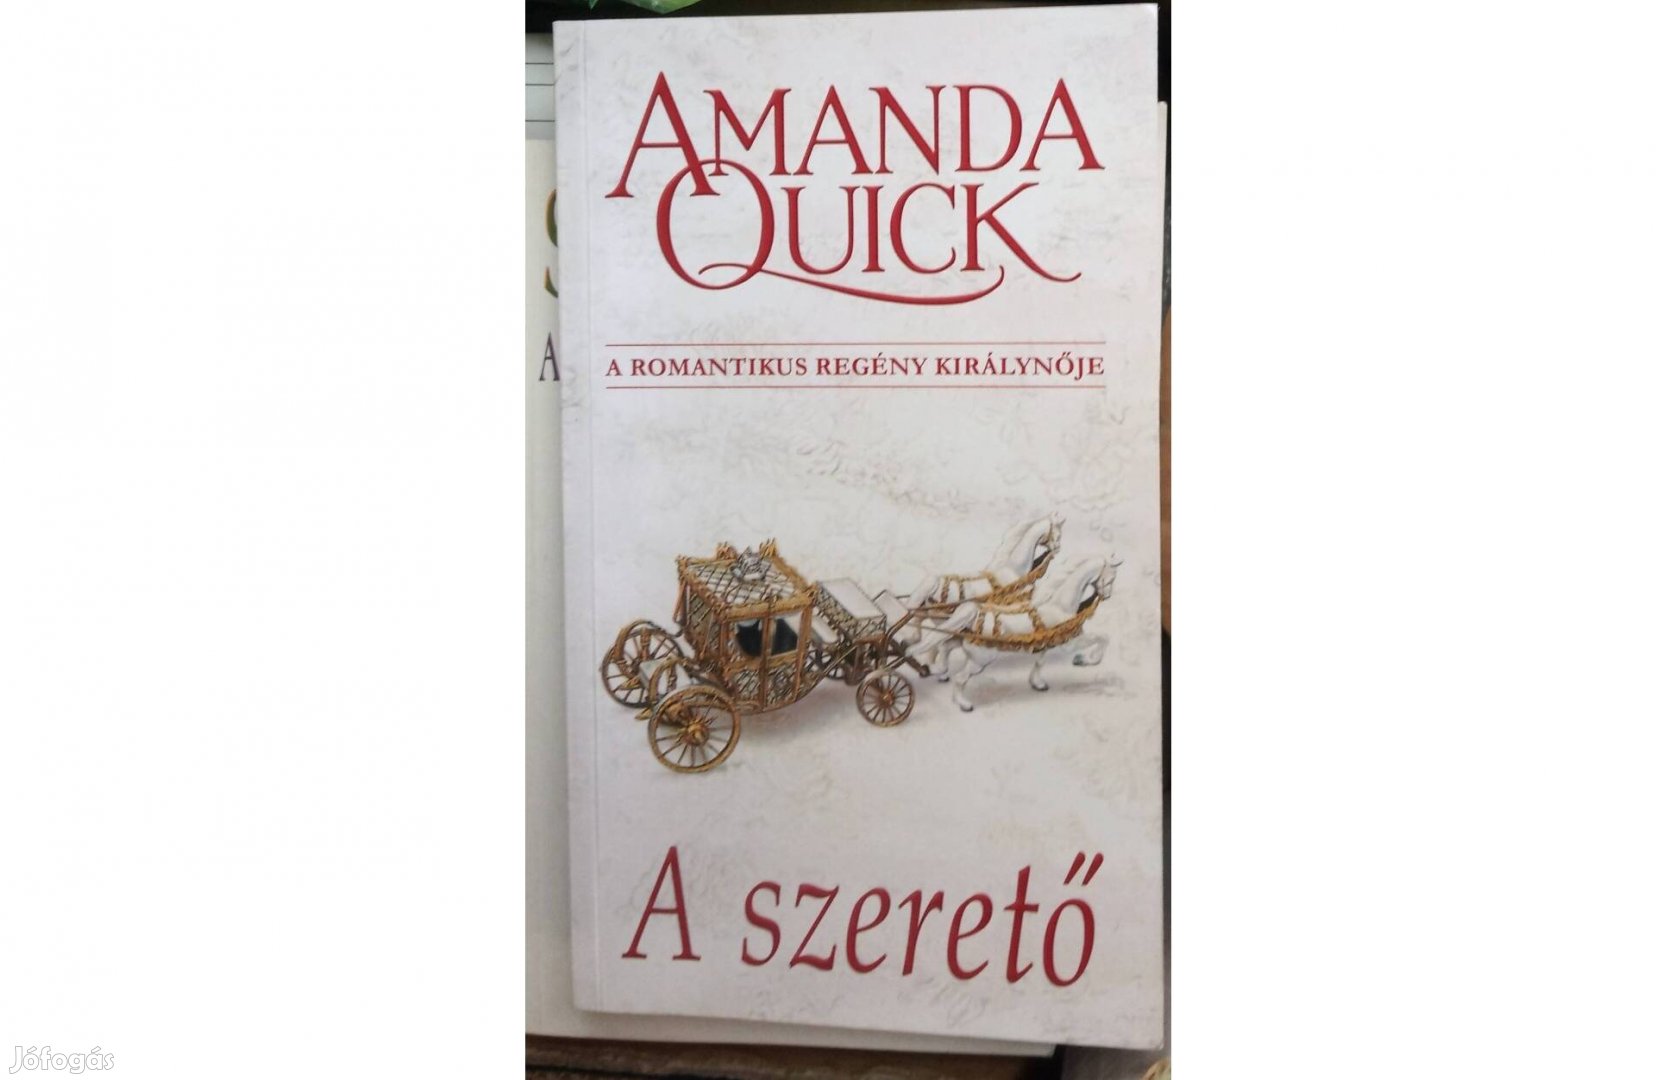 Amanda Quick: A szerető (a romantikus regény királynője)